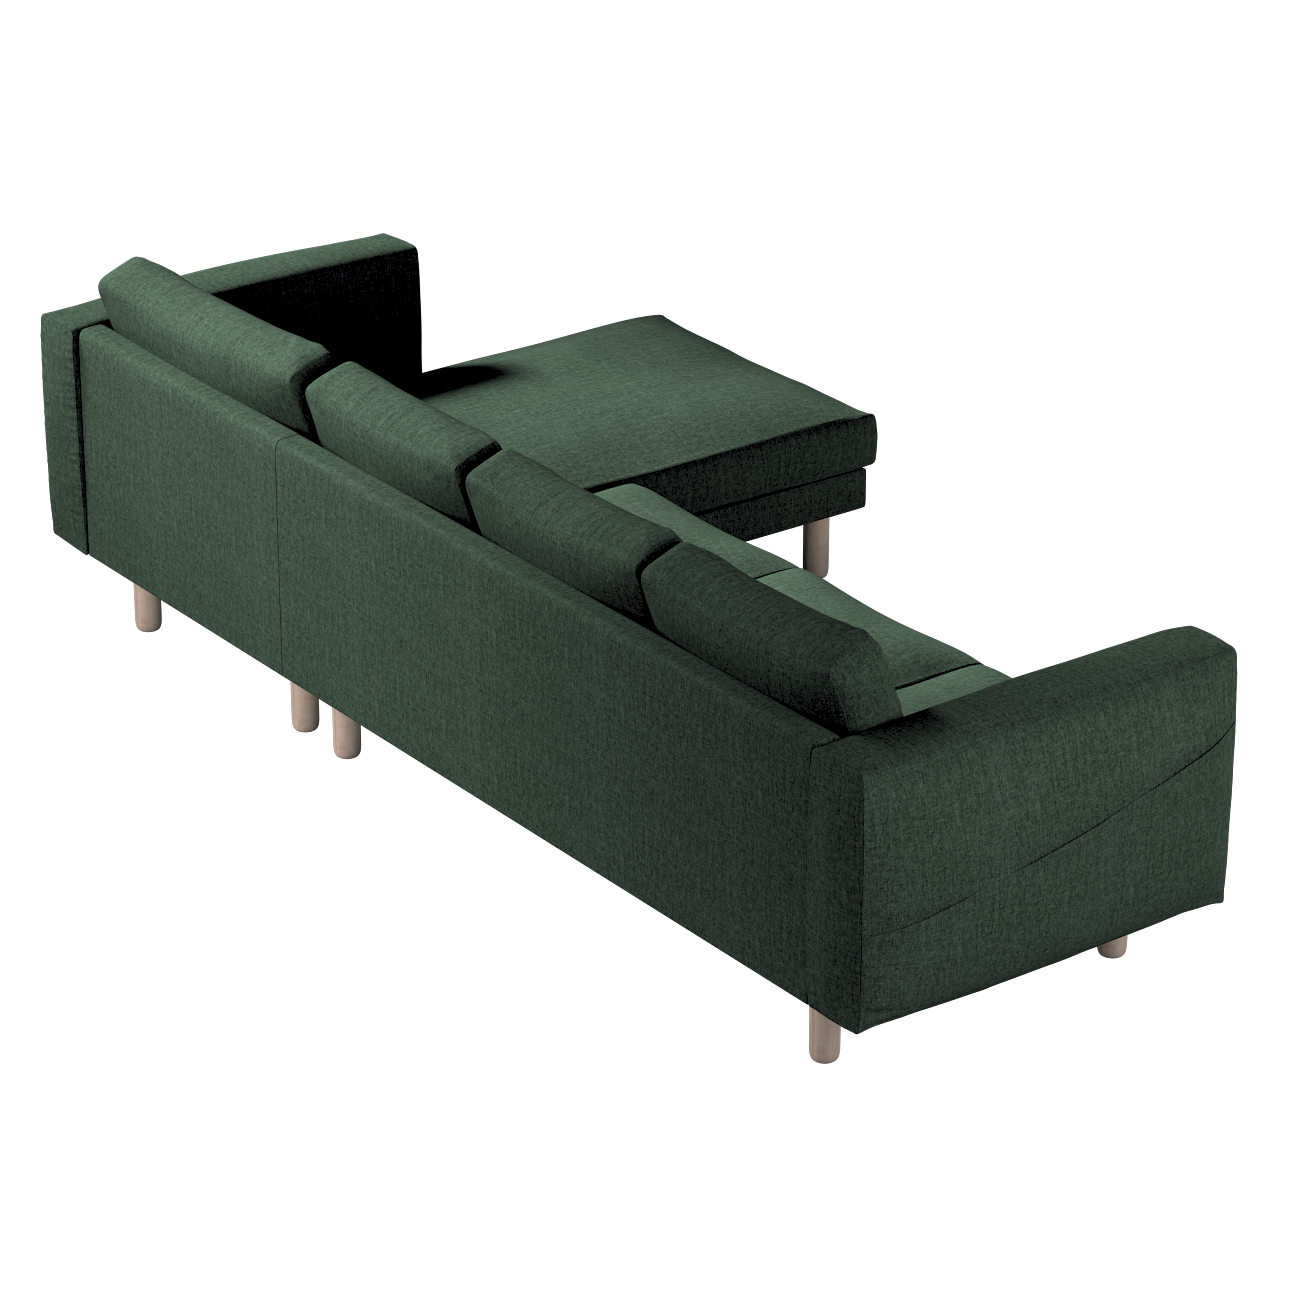 Bezug für Norsborg 4-Sitzer Sofa mit Recamiere, dunkelgrün, Norsborg Bezug günstig online kaufen